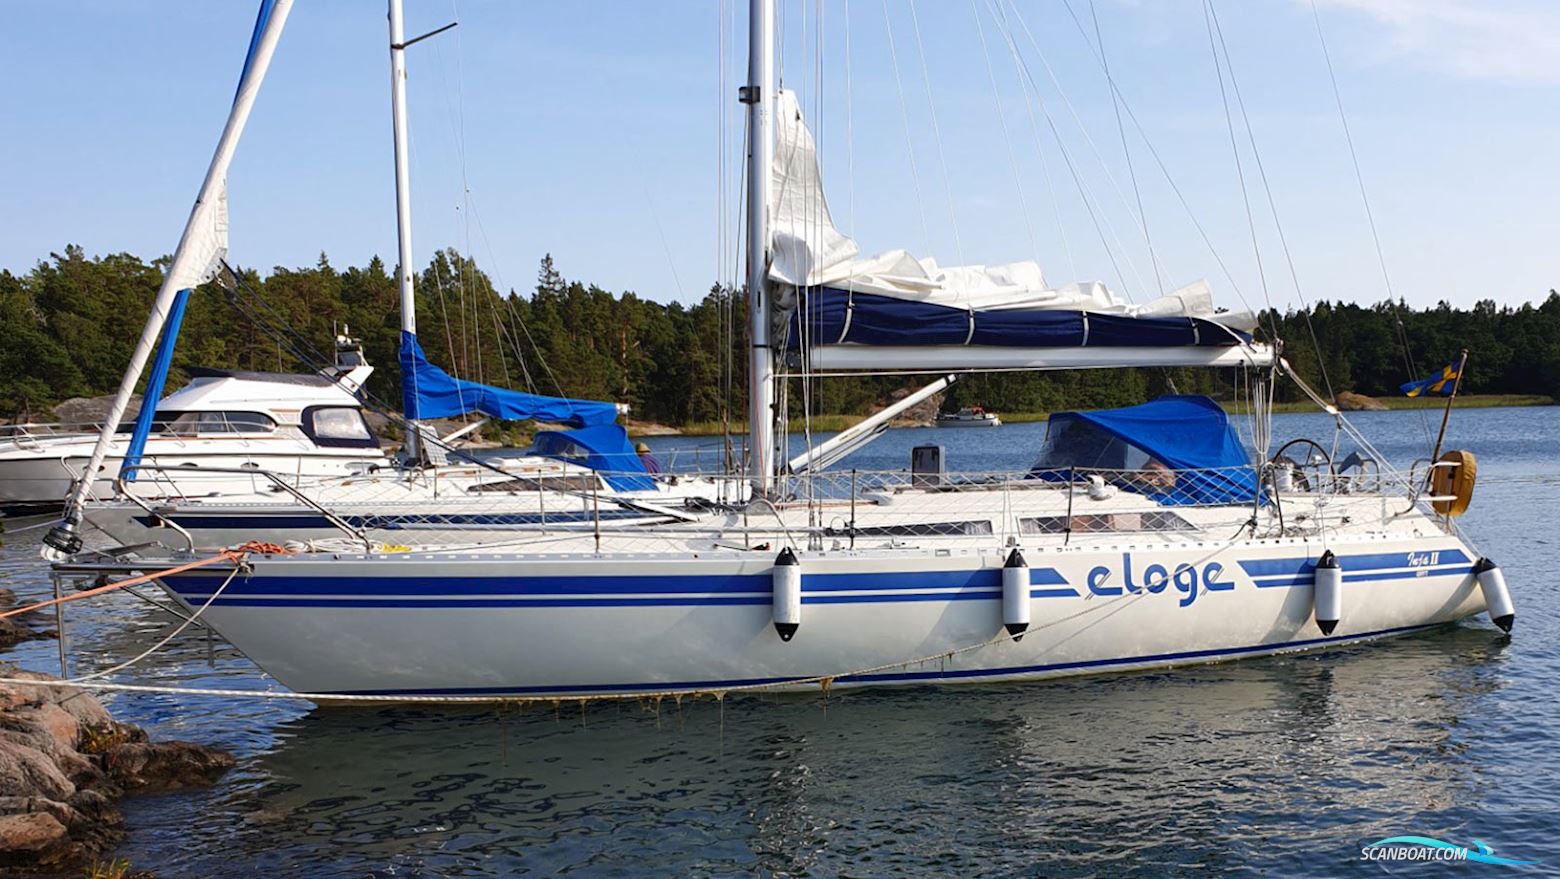 Eloge Eloge 38 Sailing boat 1997, with Volvo Penta engine, Sweden